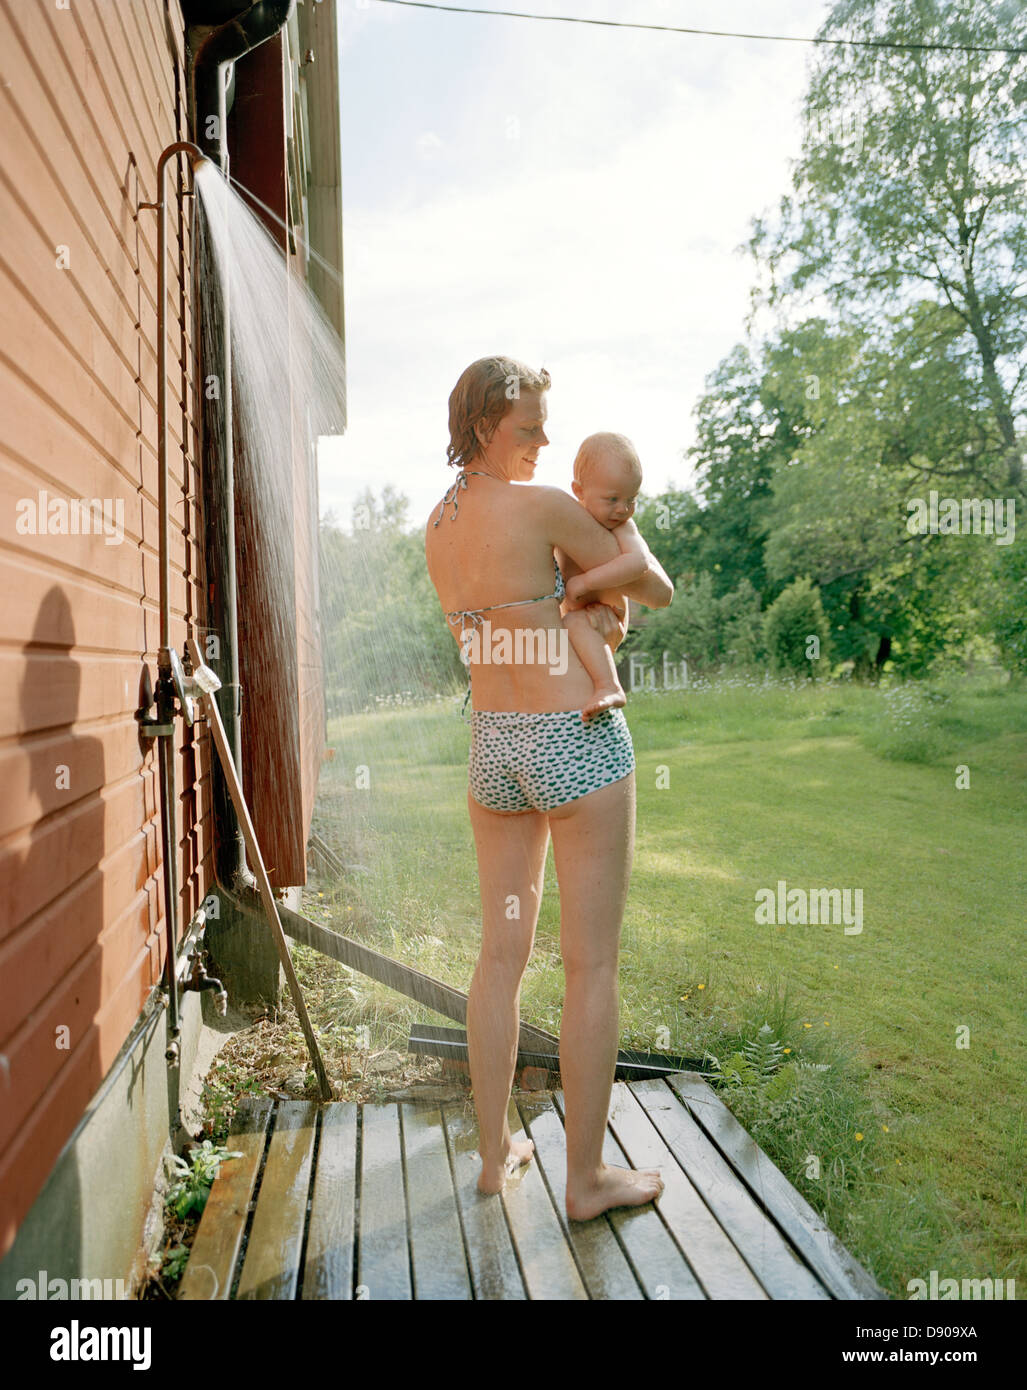 Jungs Duschen Draußen Stockfotos und -bilder Kaufen - Alamy